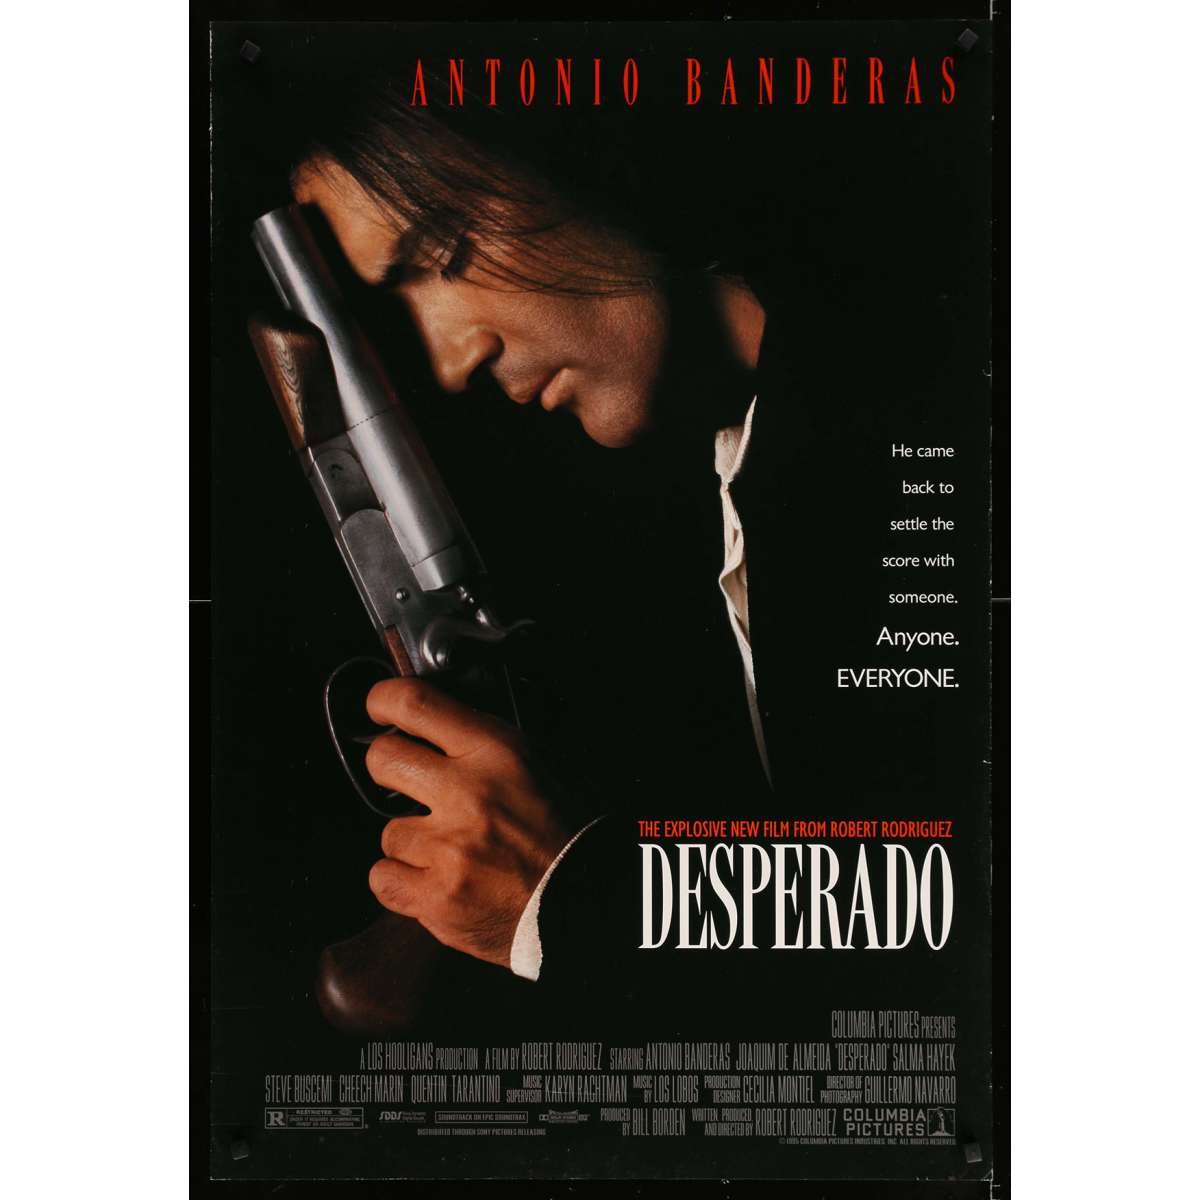 ANTONIO BANDERAS in DESPERADO, 1995, directed by ROBERT RODRIGUEZ